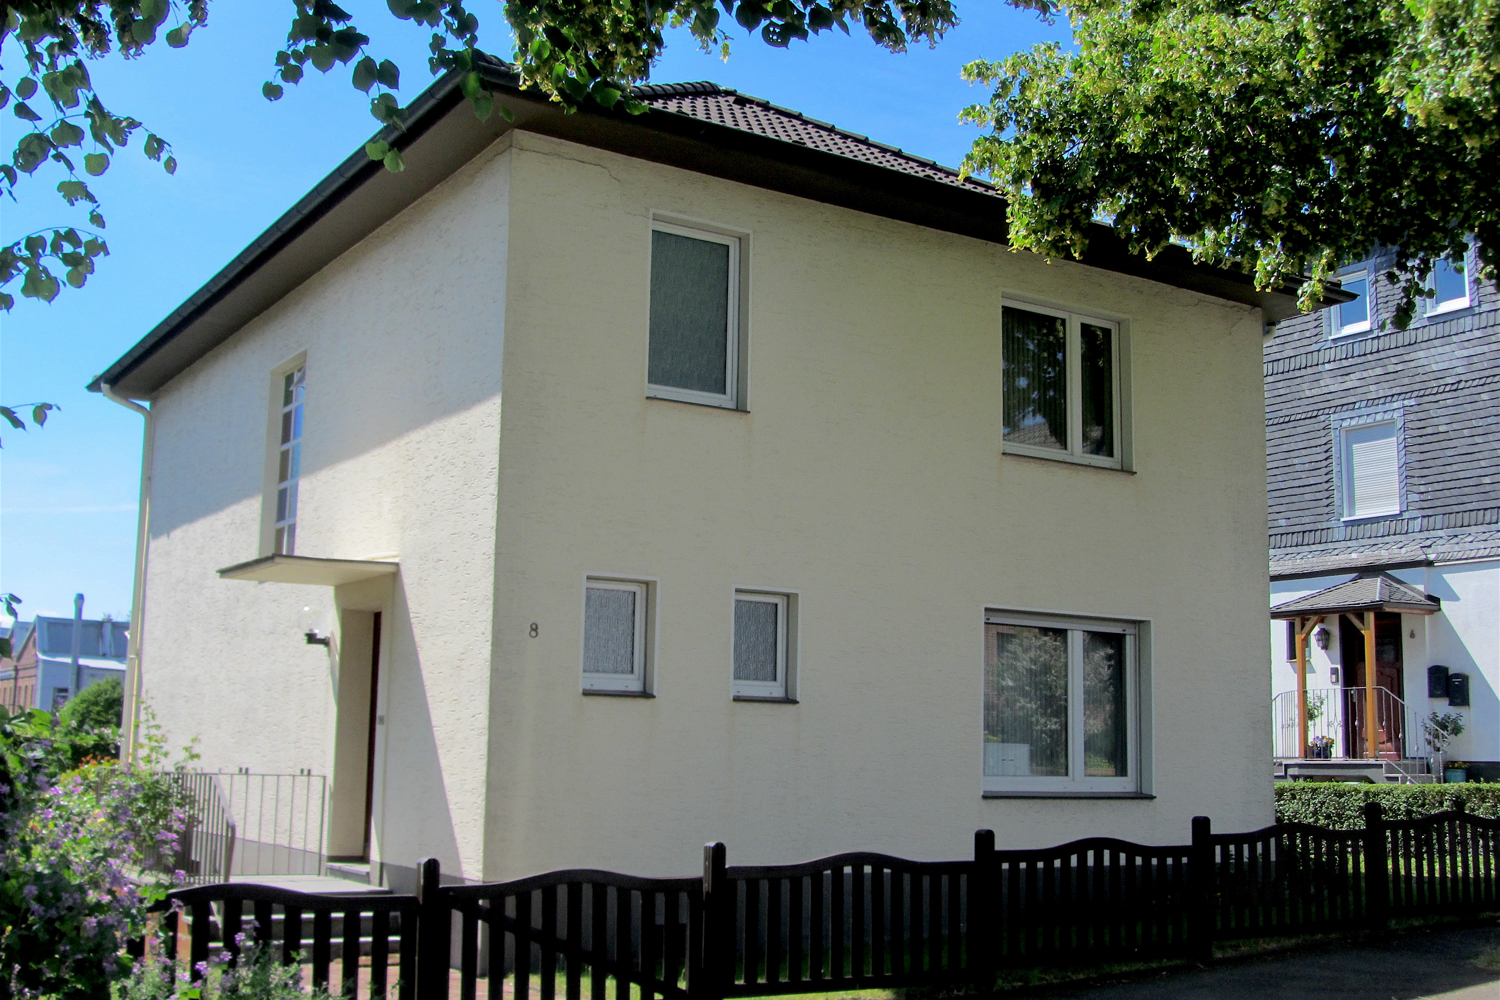 Großzügiges Einfamilienhaus mit Garage in ruhiger Seitenstraße von Lüttringhausen